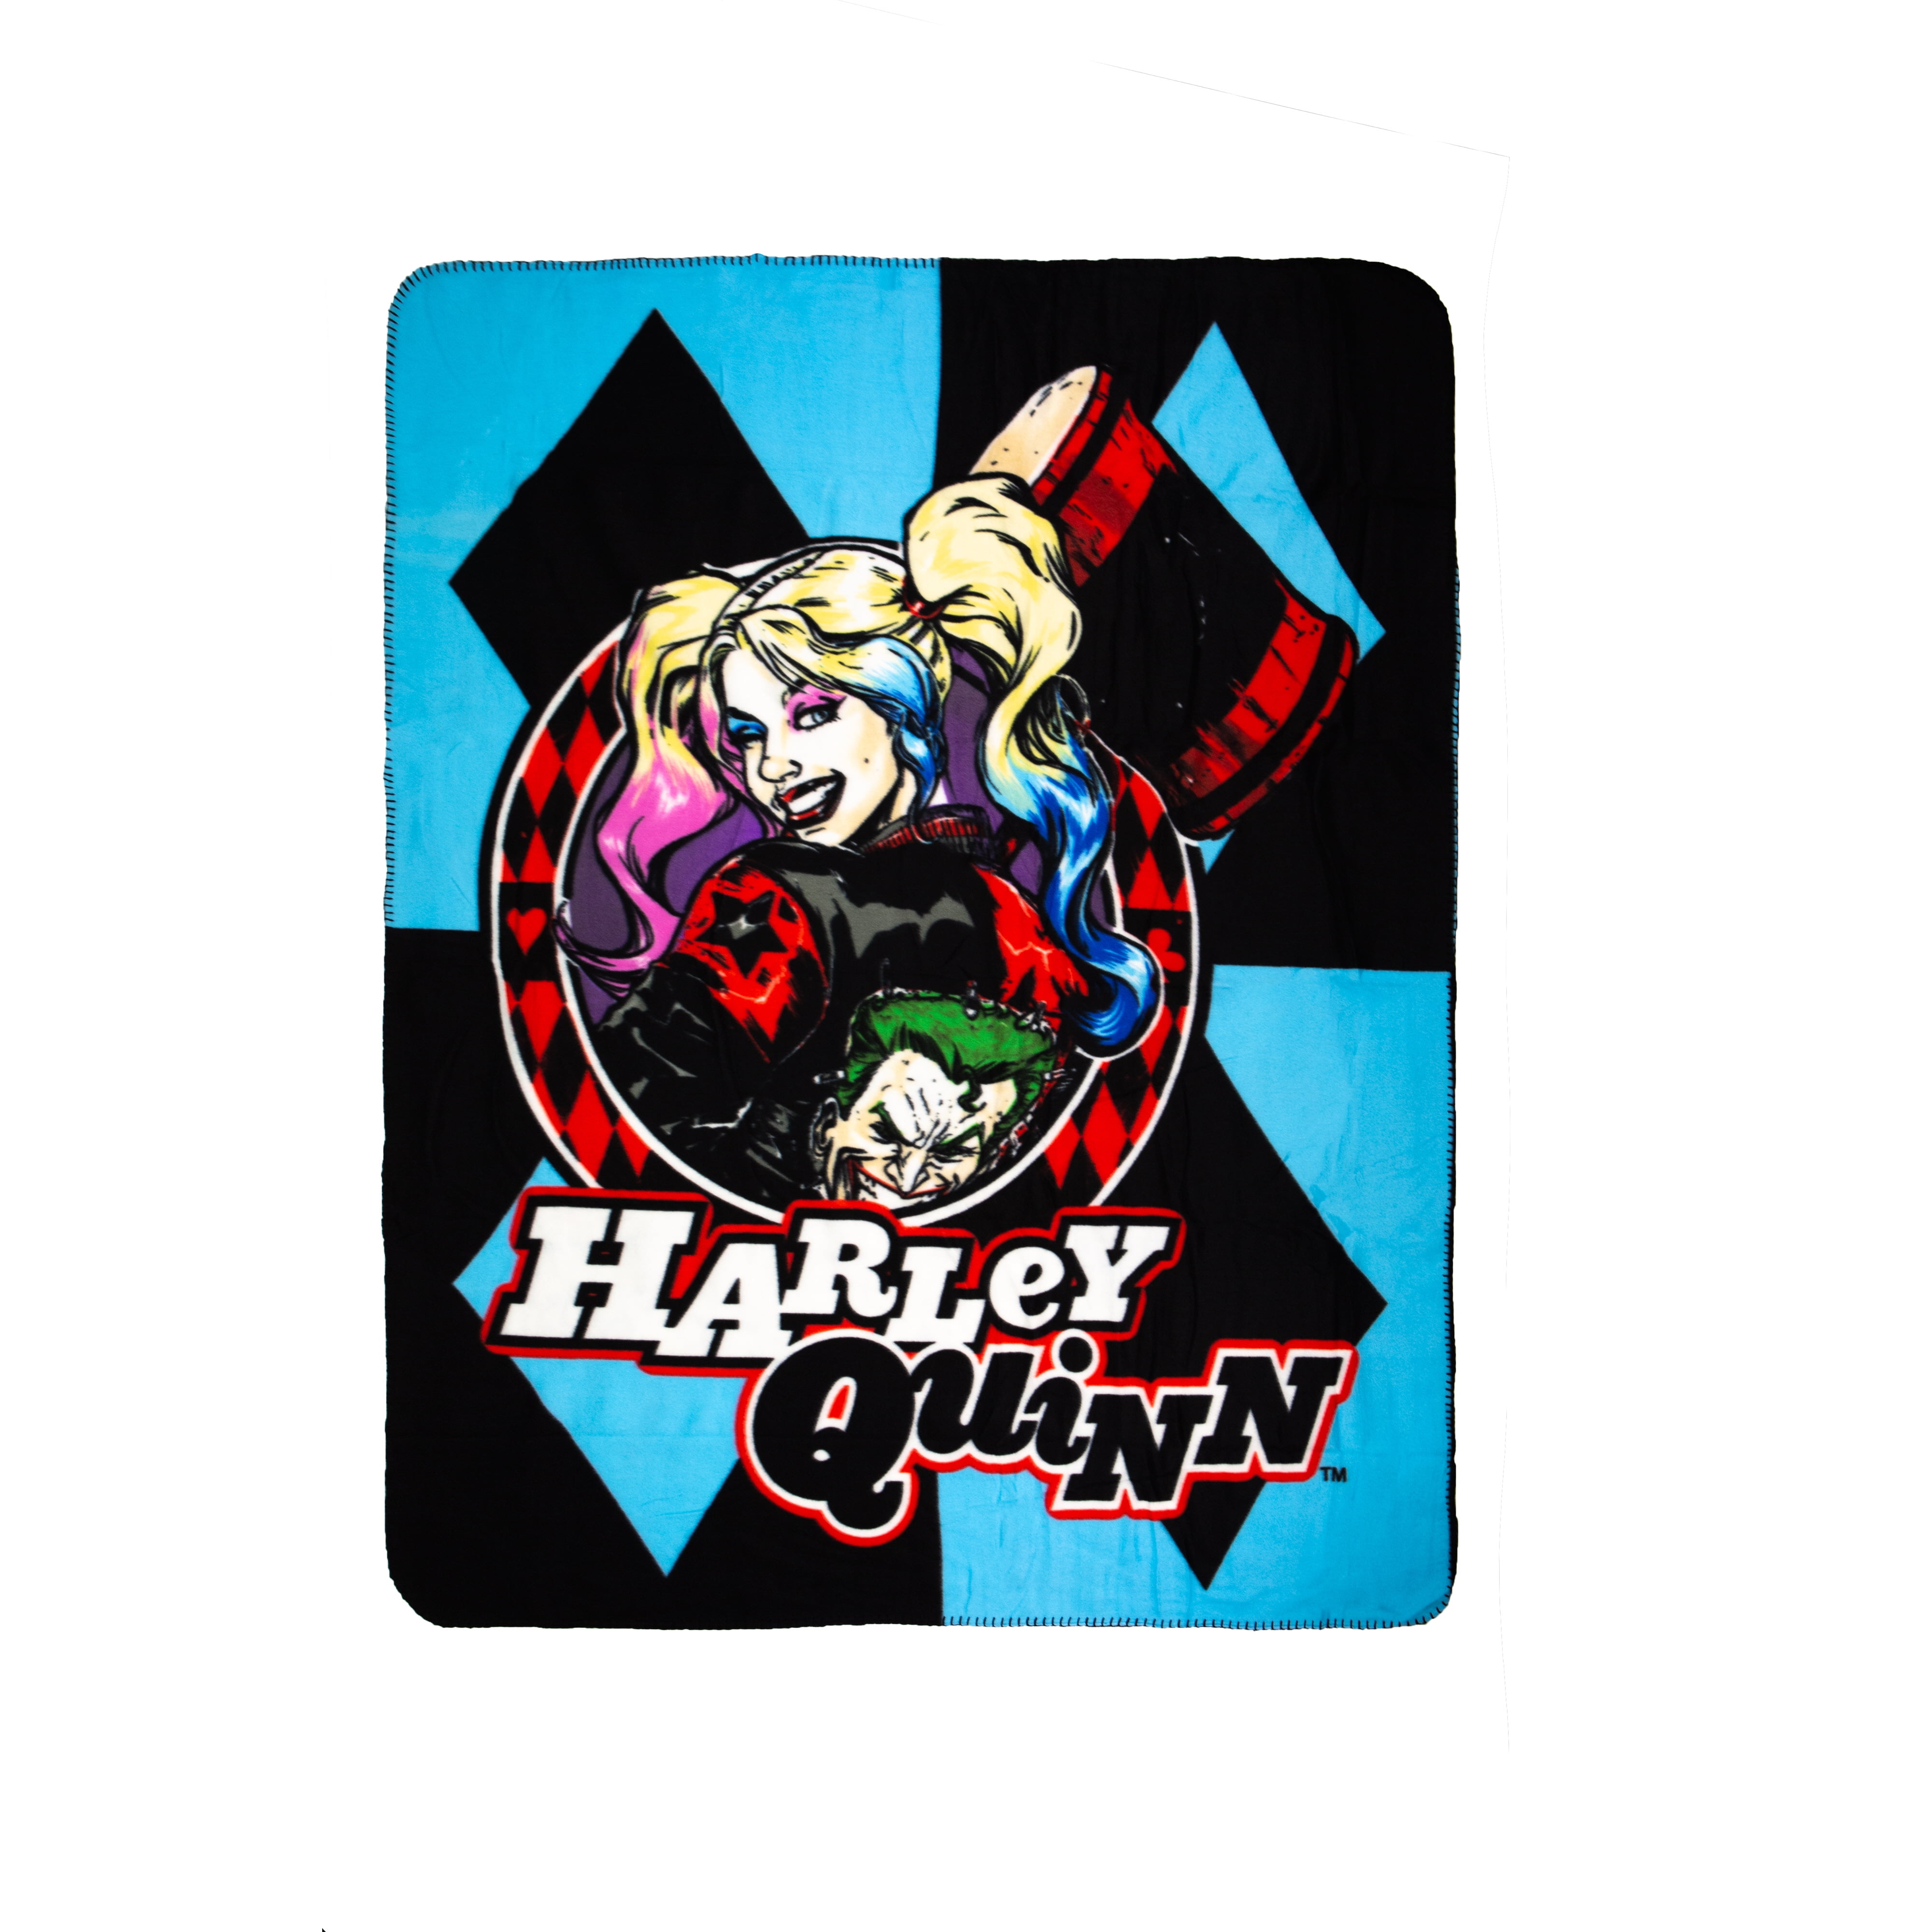 Crover Dc Comics Harley Quinn Diamonds Joker Blanket Walmartcom Walmartcom